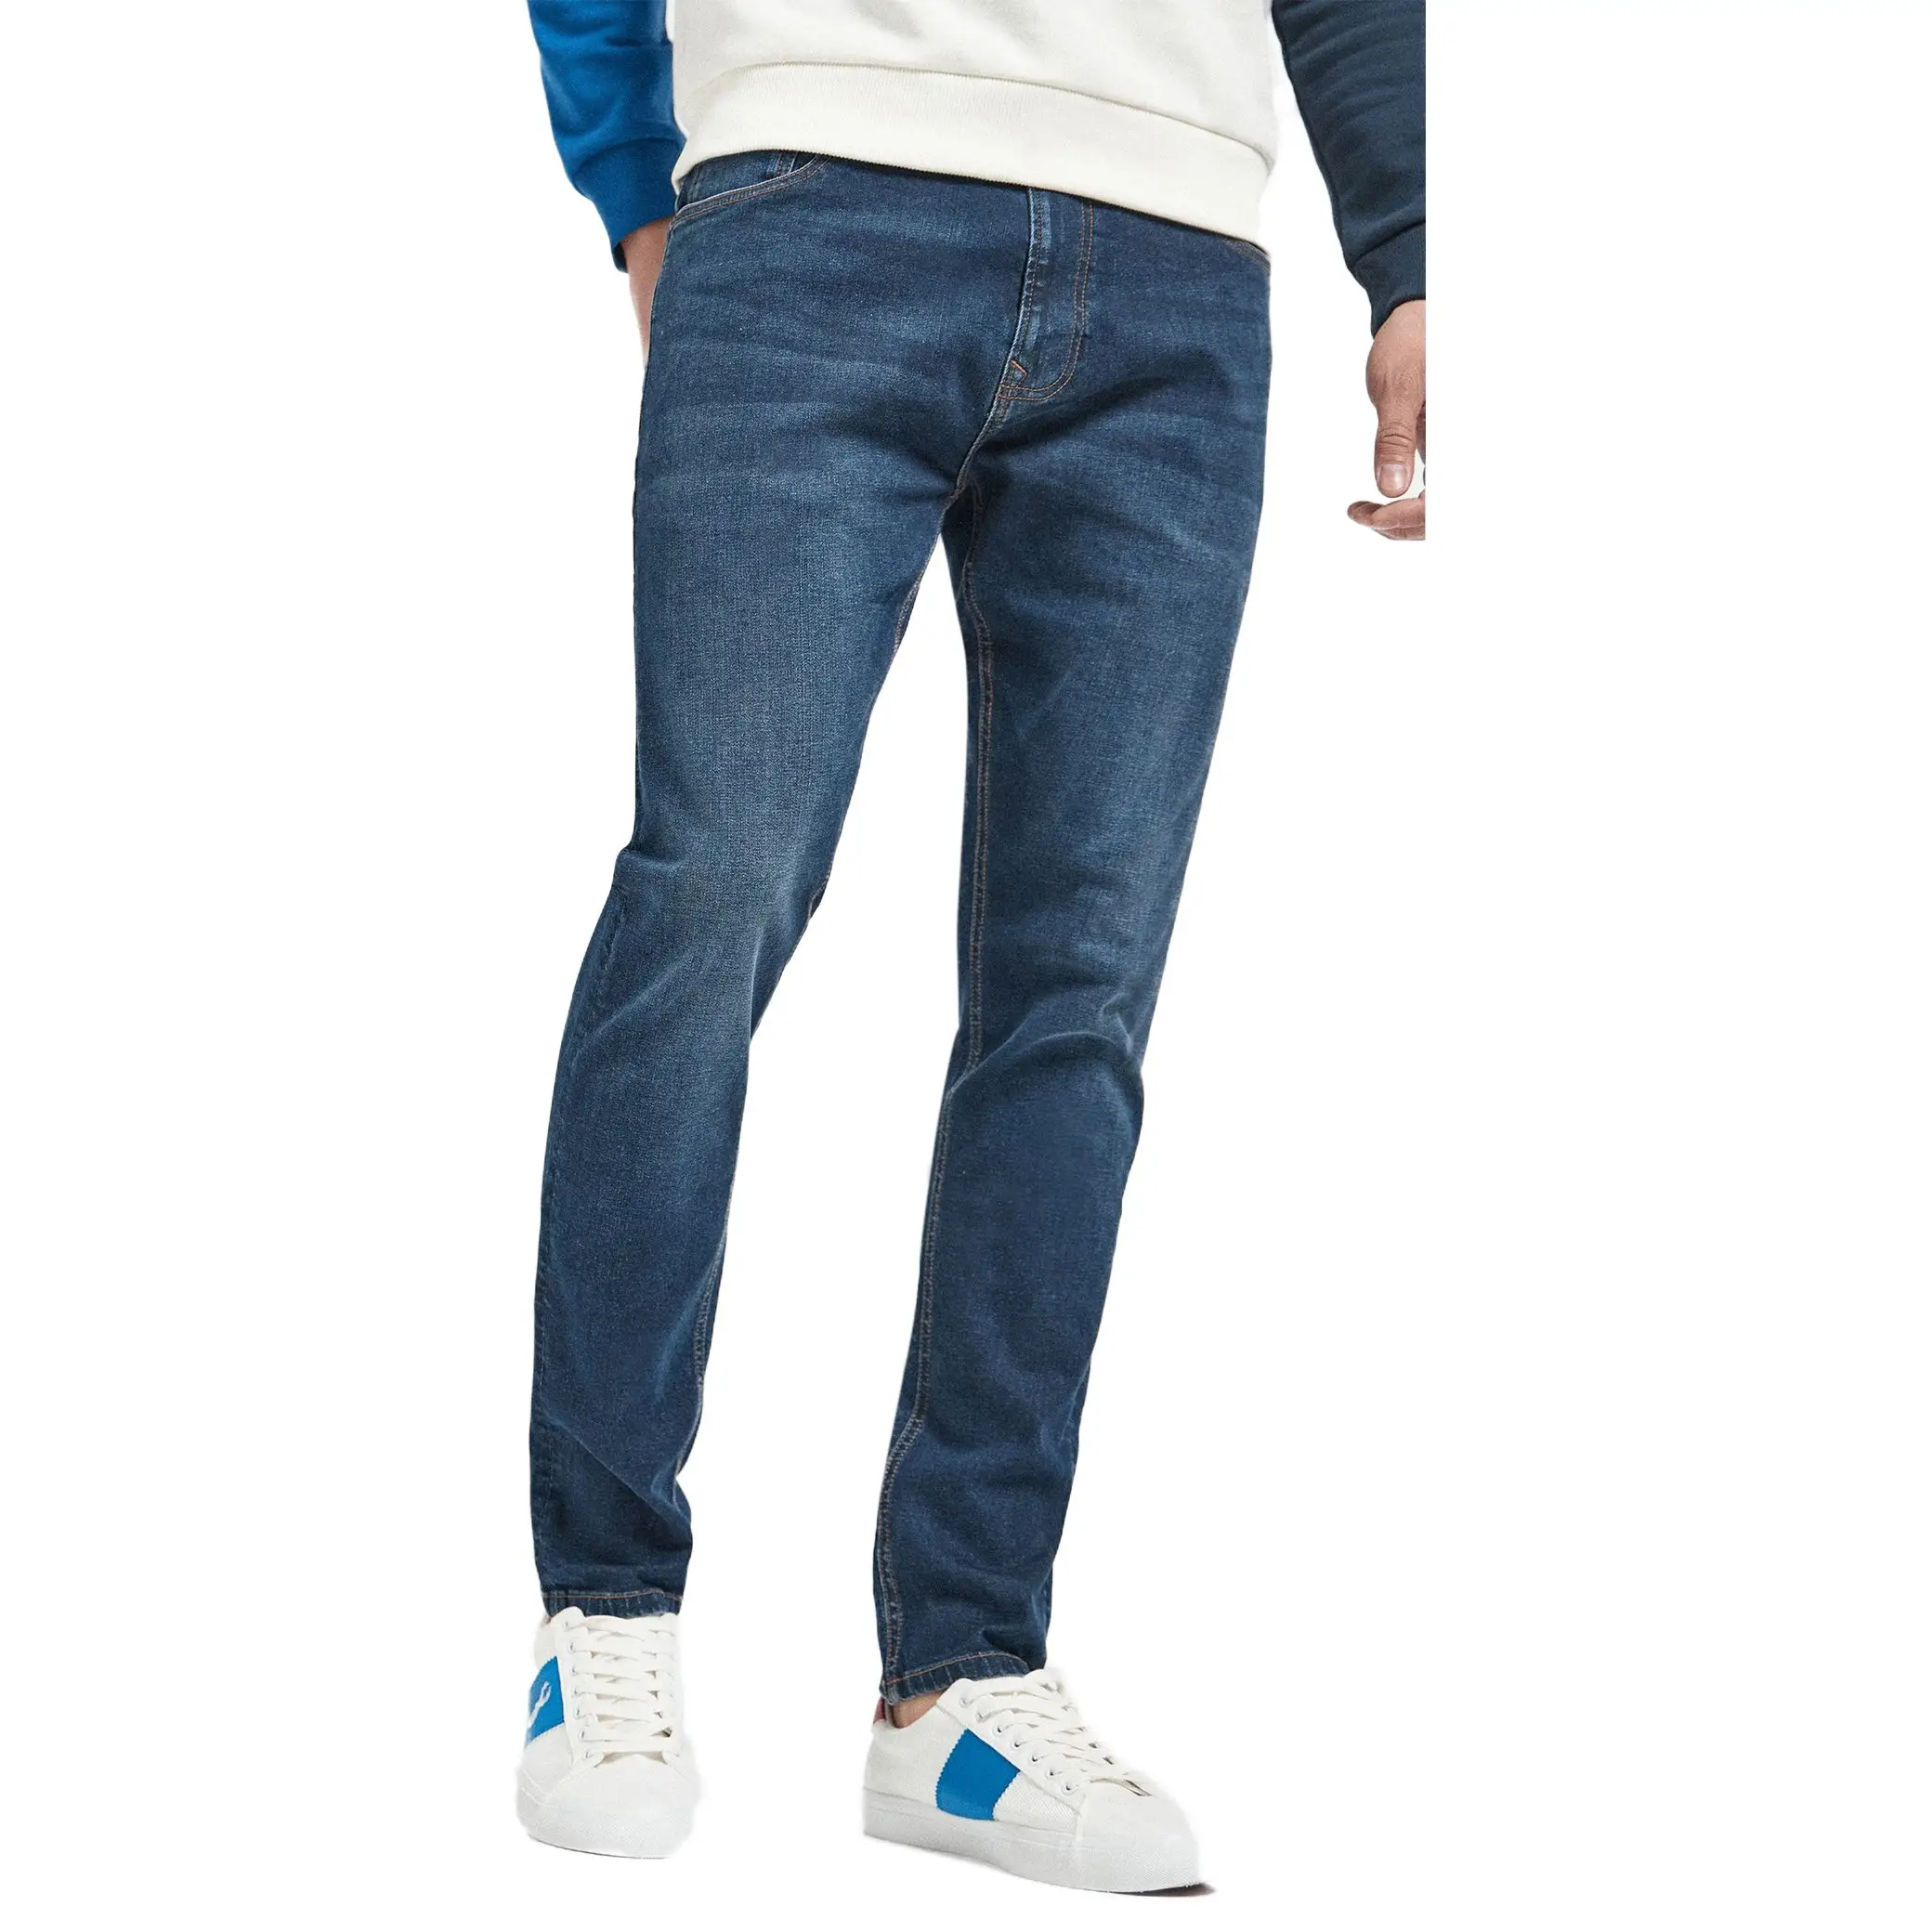 Venta al por mayor Ready Stock Stacked Streetwear Vintage Outdoor Cargo Denim Jeans Pantalones para hombres